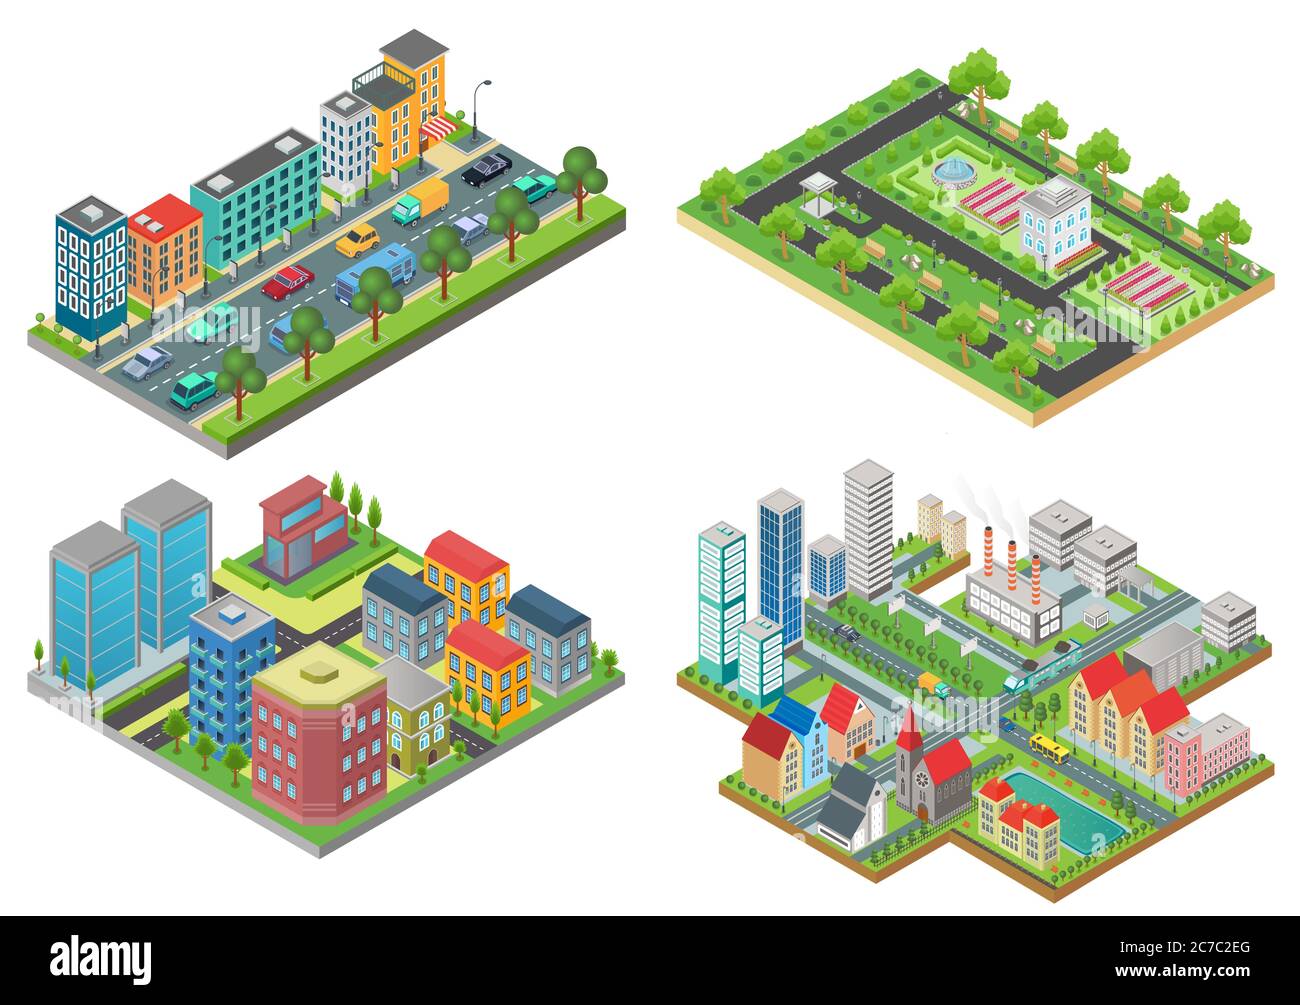 Set von isolierten 3d Isometrischen realistischen Cartoon Stadt Karten Draufsicht Vektor Iullustration Stock Vektor